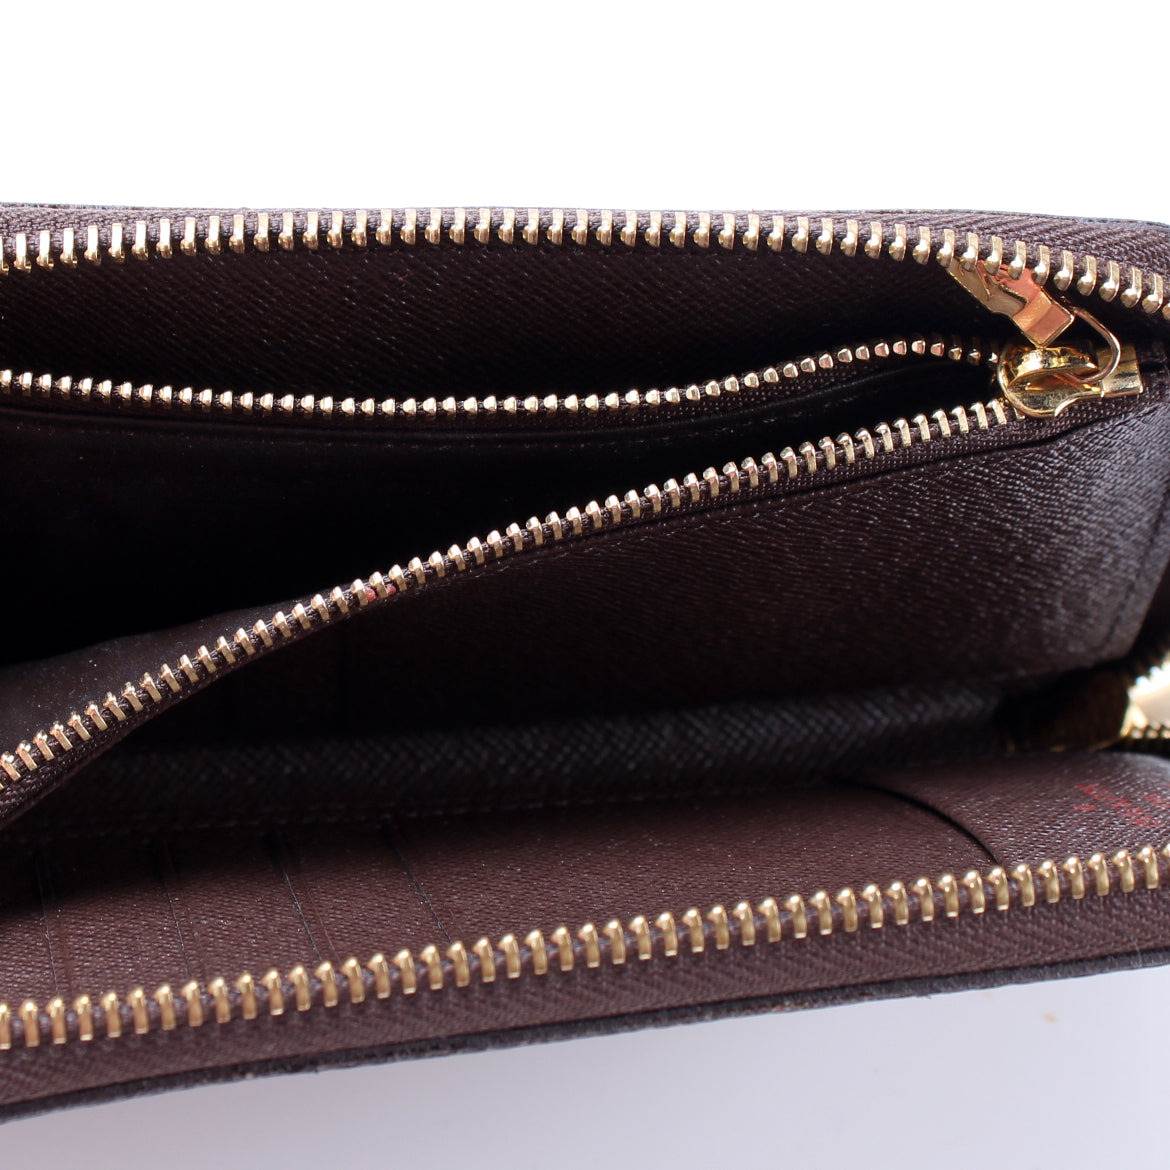 SOLD Authentic Louis Vuitton Zippy Compact Wallet